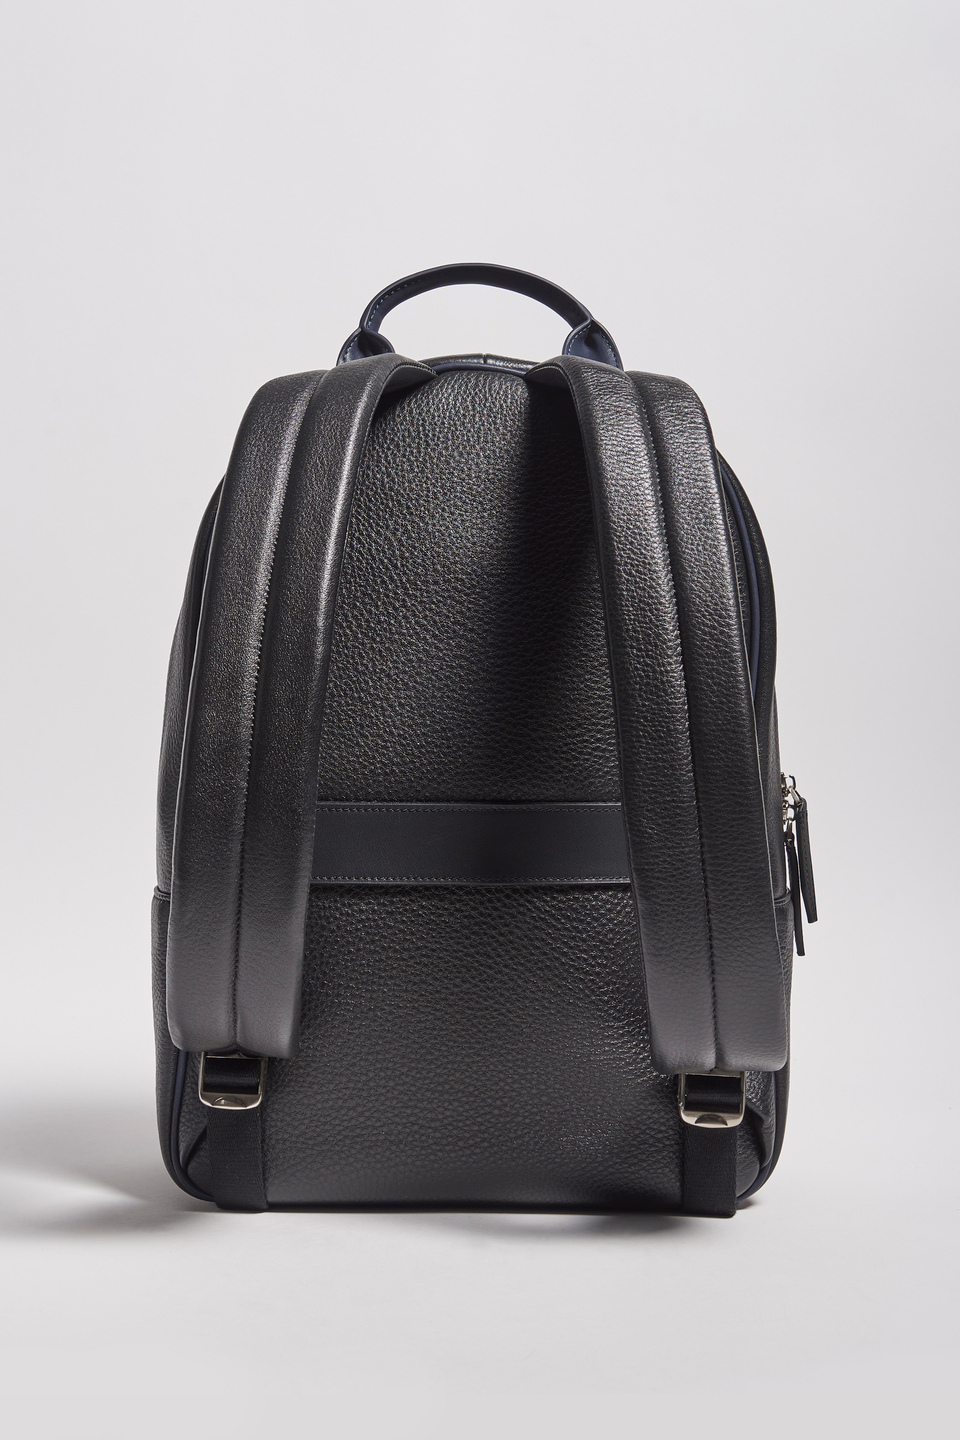 Hammered leather backpack | La Martina - Official Online Shop